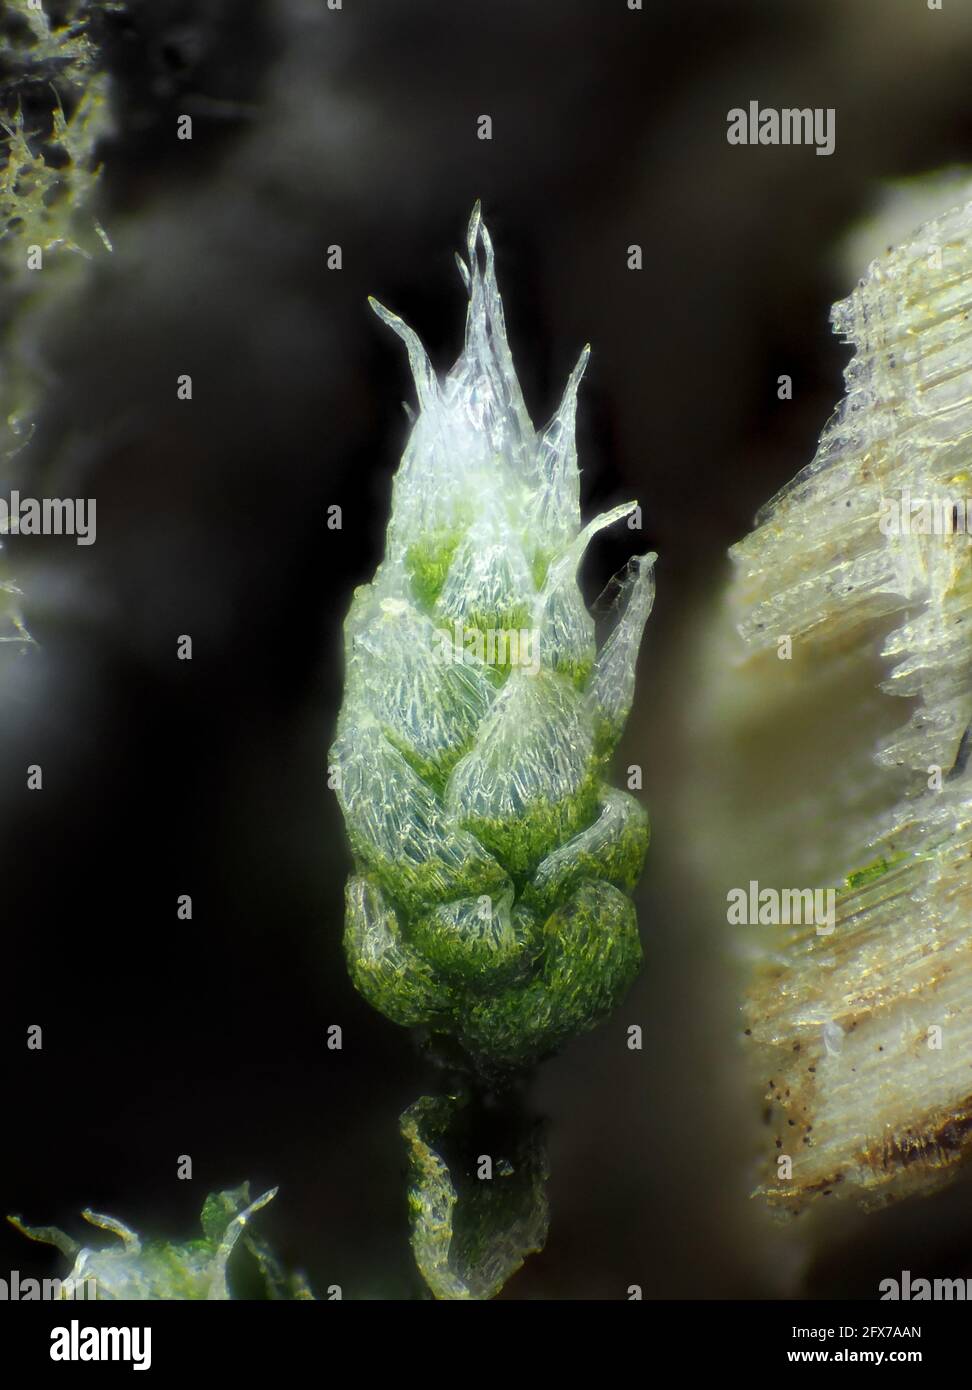 Musgo muy joven (probablemente Bryum argenteum) Bajo el microscopio, el campo de visión vertical es de aproximadamente 1,1mm Foto de stock